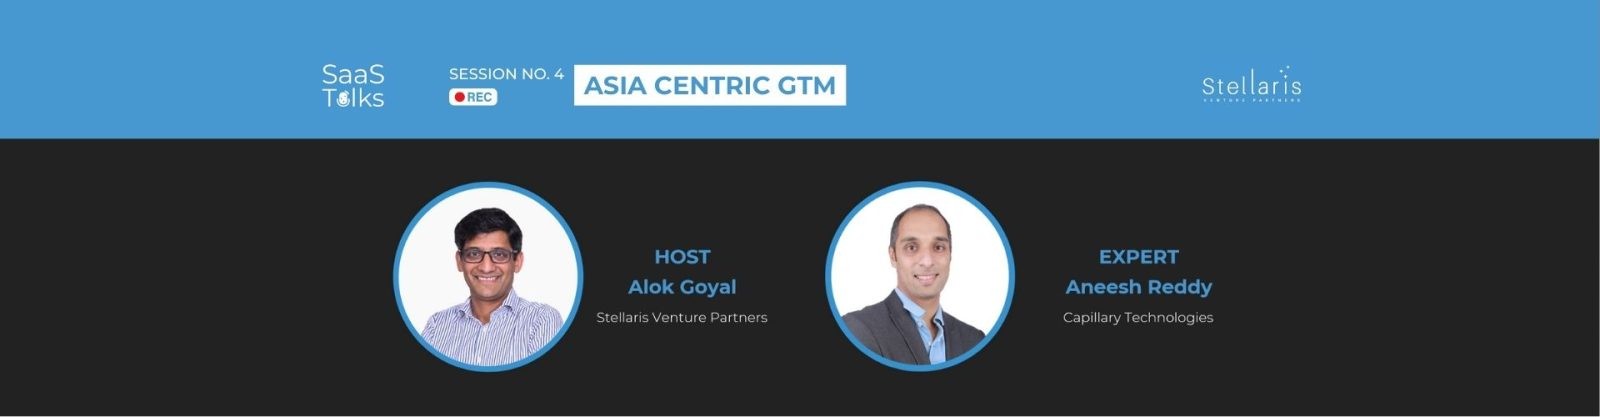 SaaS Talks #4: Asian Centric GTM